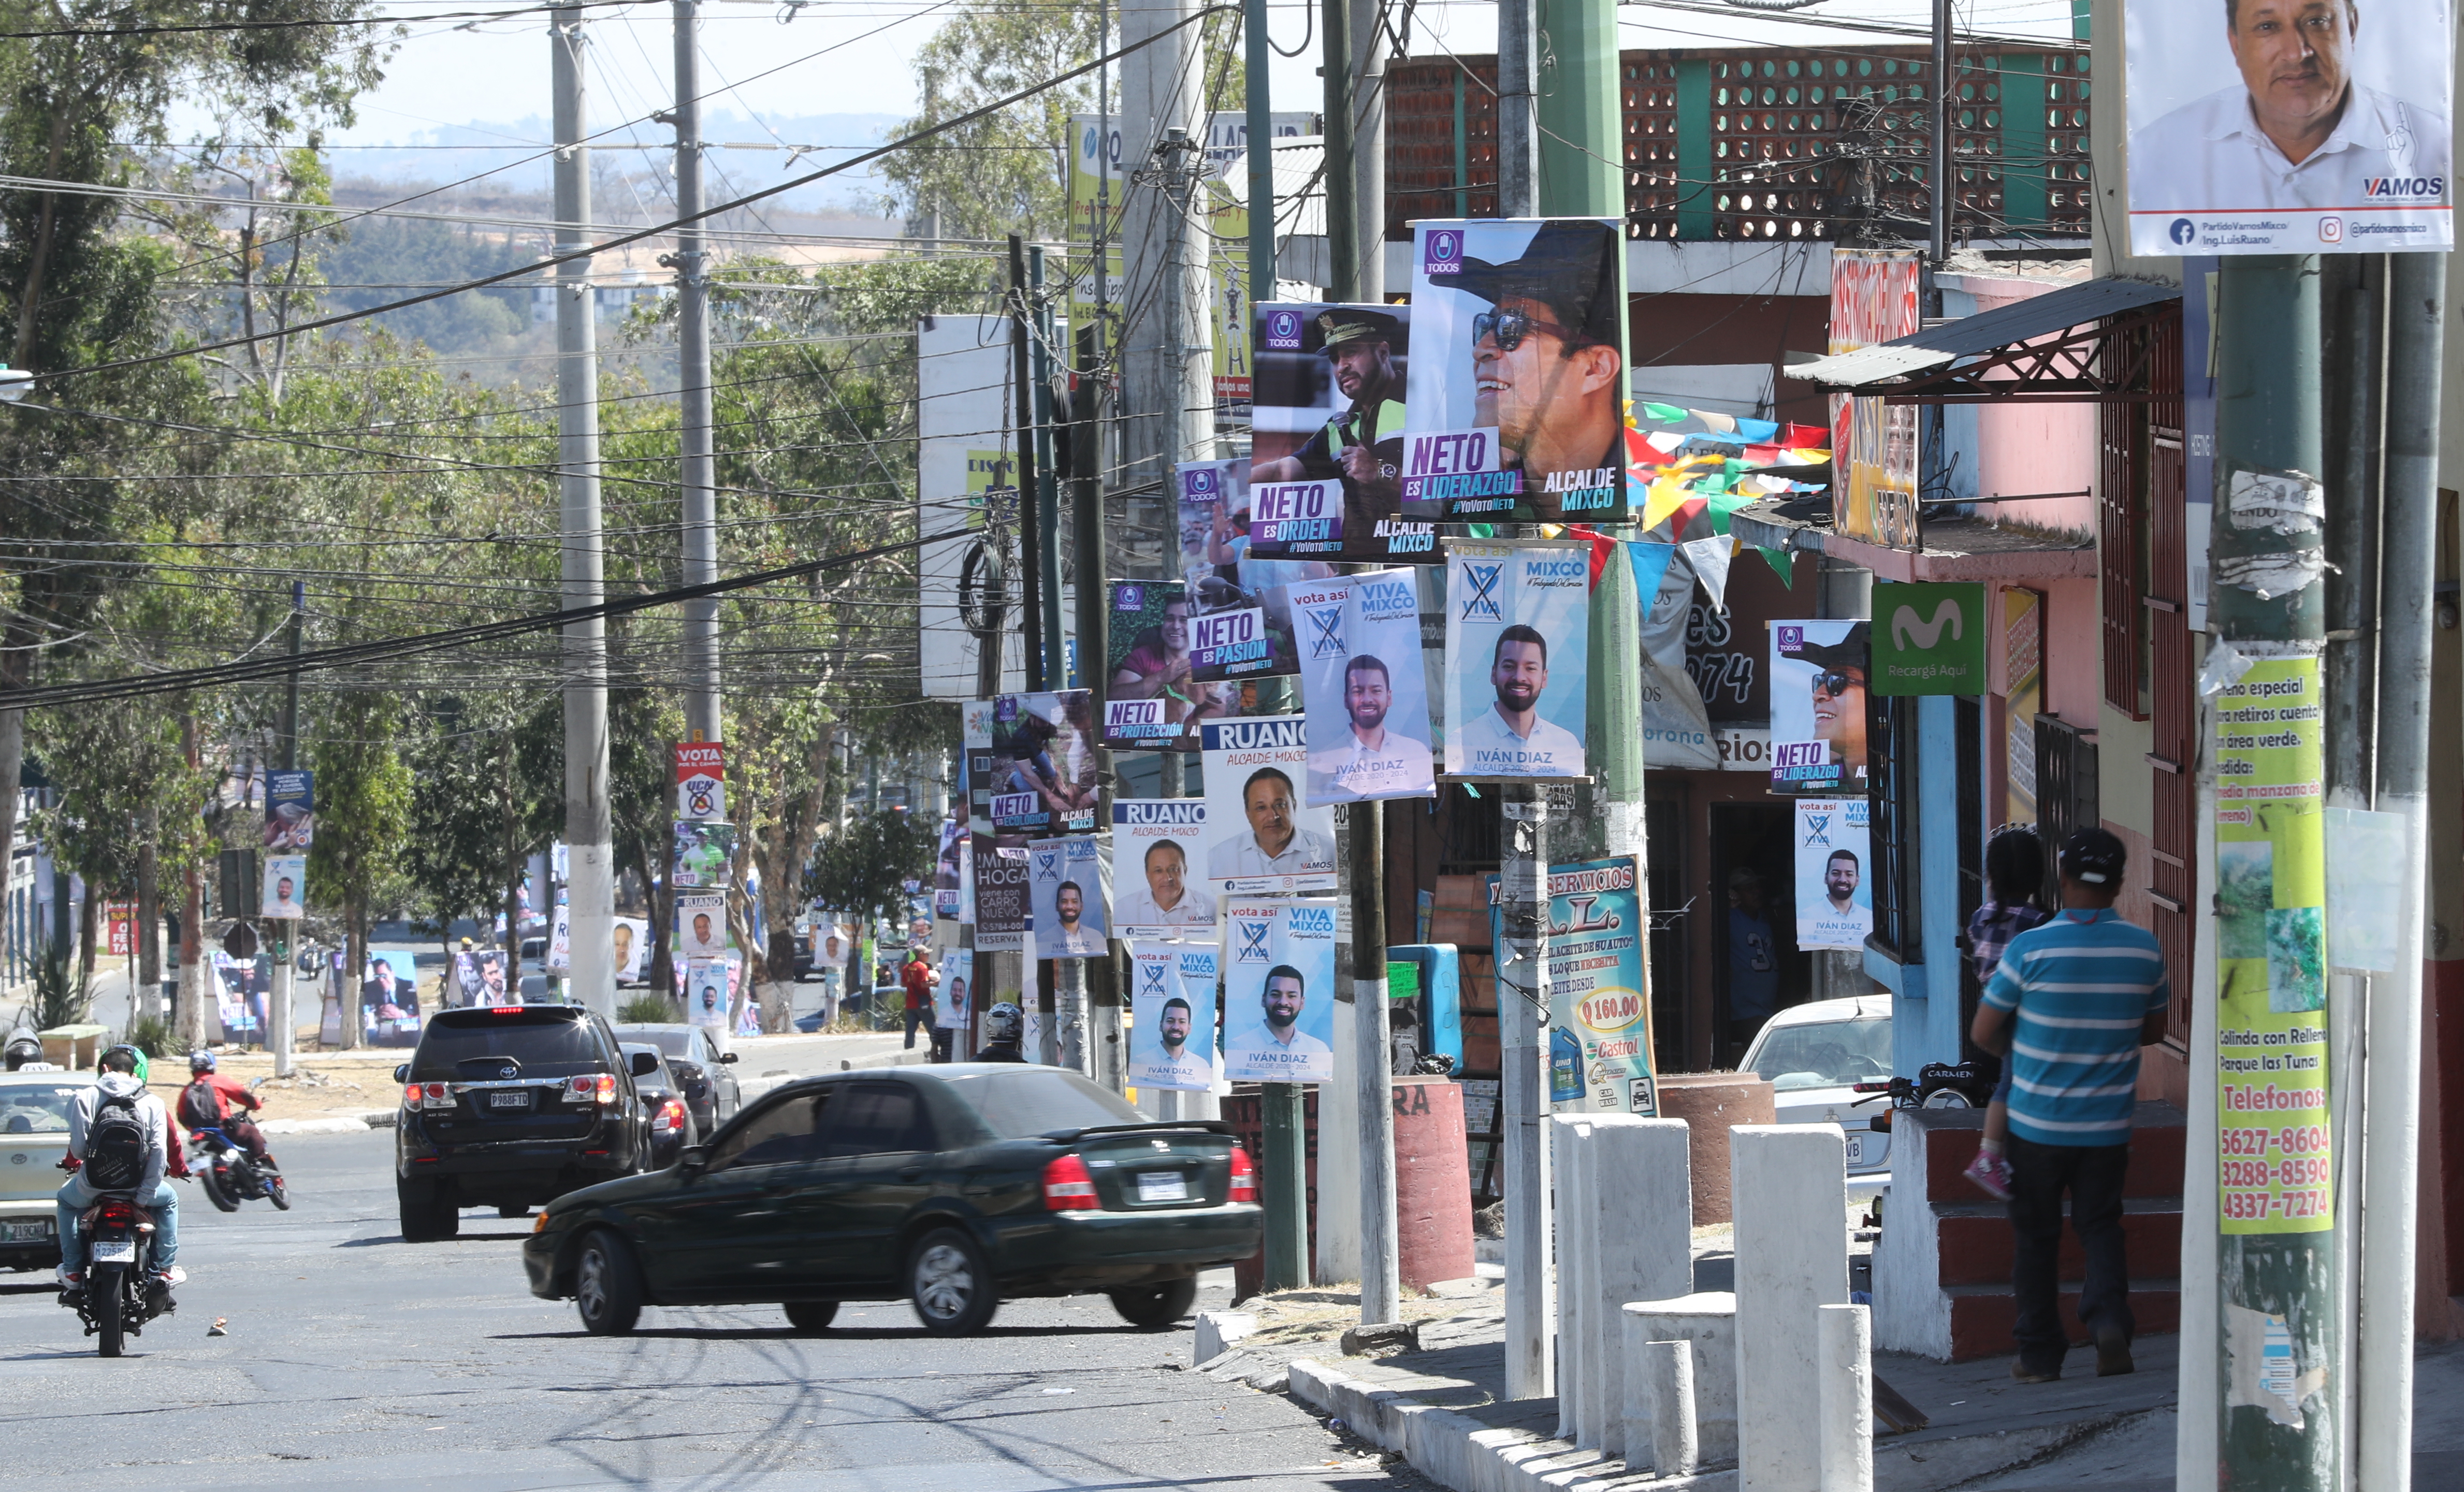 Los partidos políticos ya están enfrascados en el proceso electoral y colocan publicidad en las calles. (Foto Prensa Libre: Esbin García)